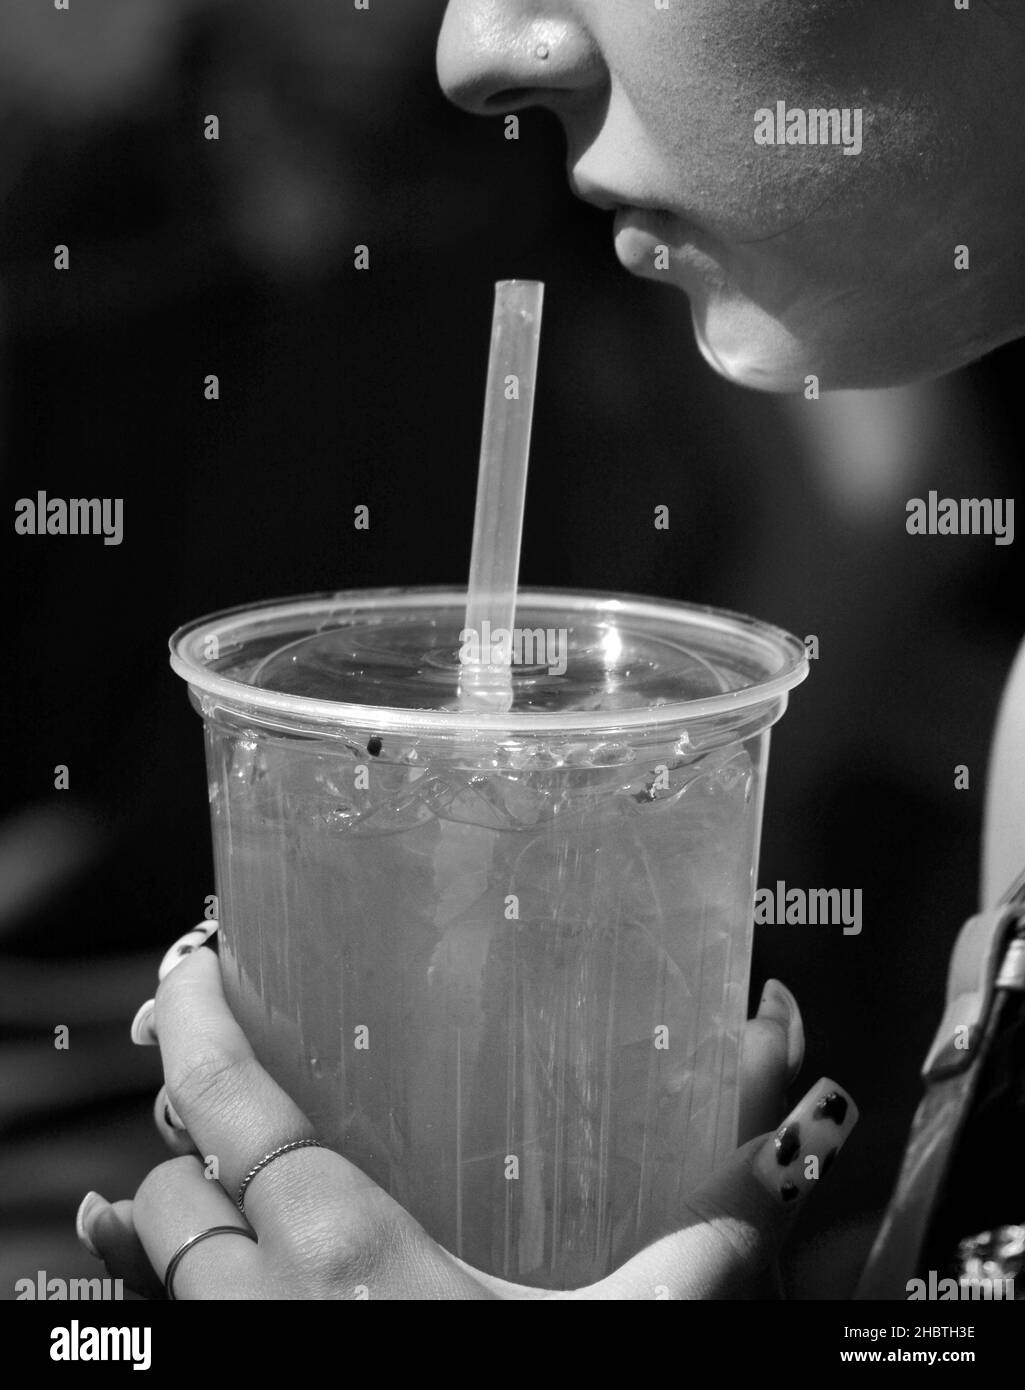 Une jeune femme boit du jus d'un contenant en plastique à l'aide d'une paille en plastique lors d'un festival à Santa Fe, Nouveau-Mexique. Banque D'Images